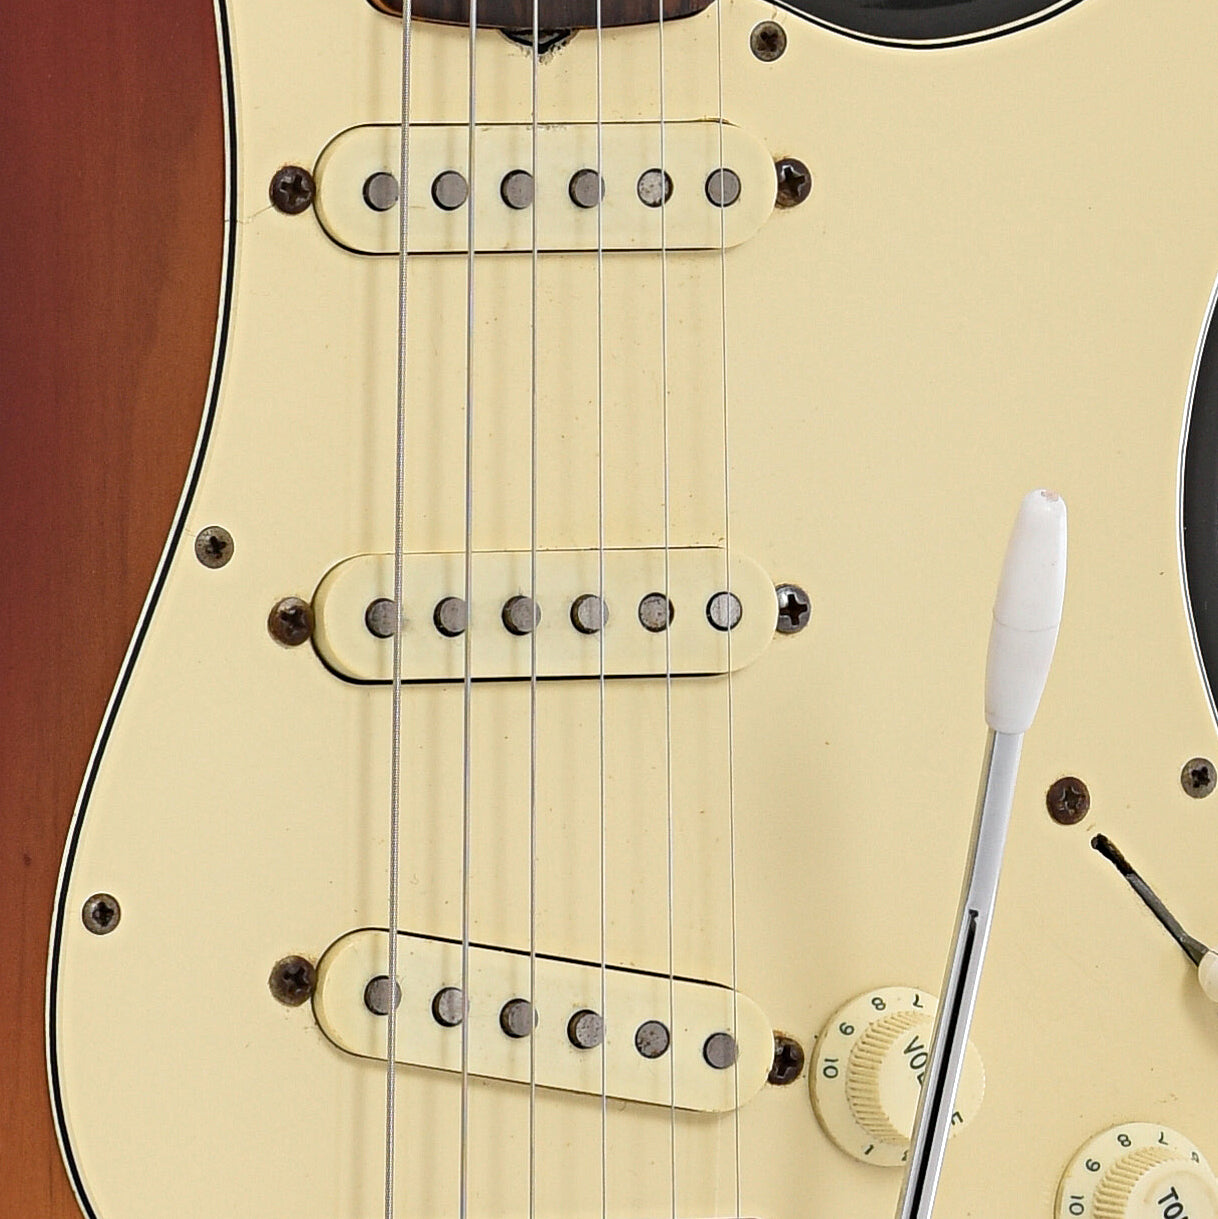 Pickups of Fender Stratocaster